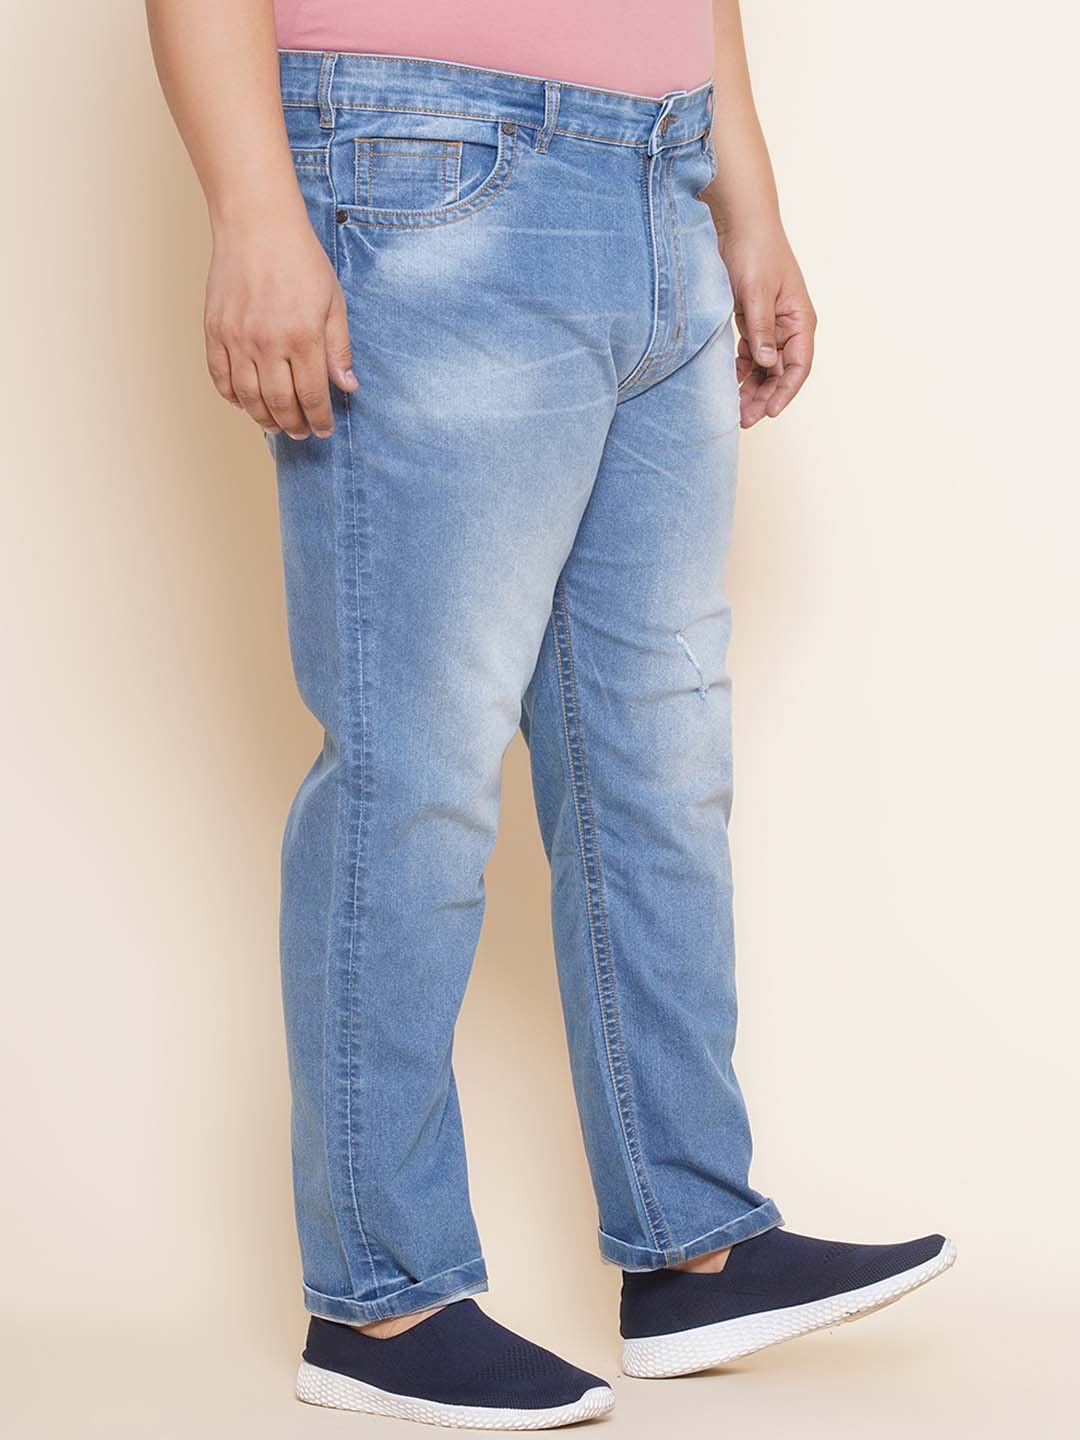 affordables/jeans/EJPJ25101/ejpj25101-3.jpg